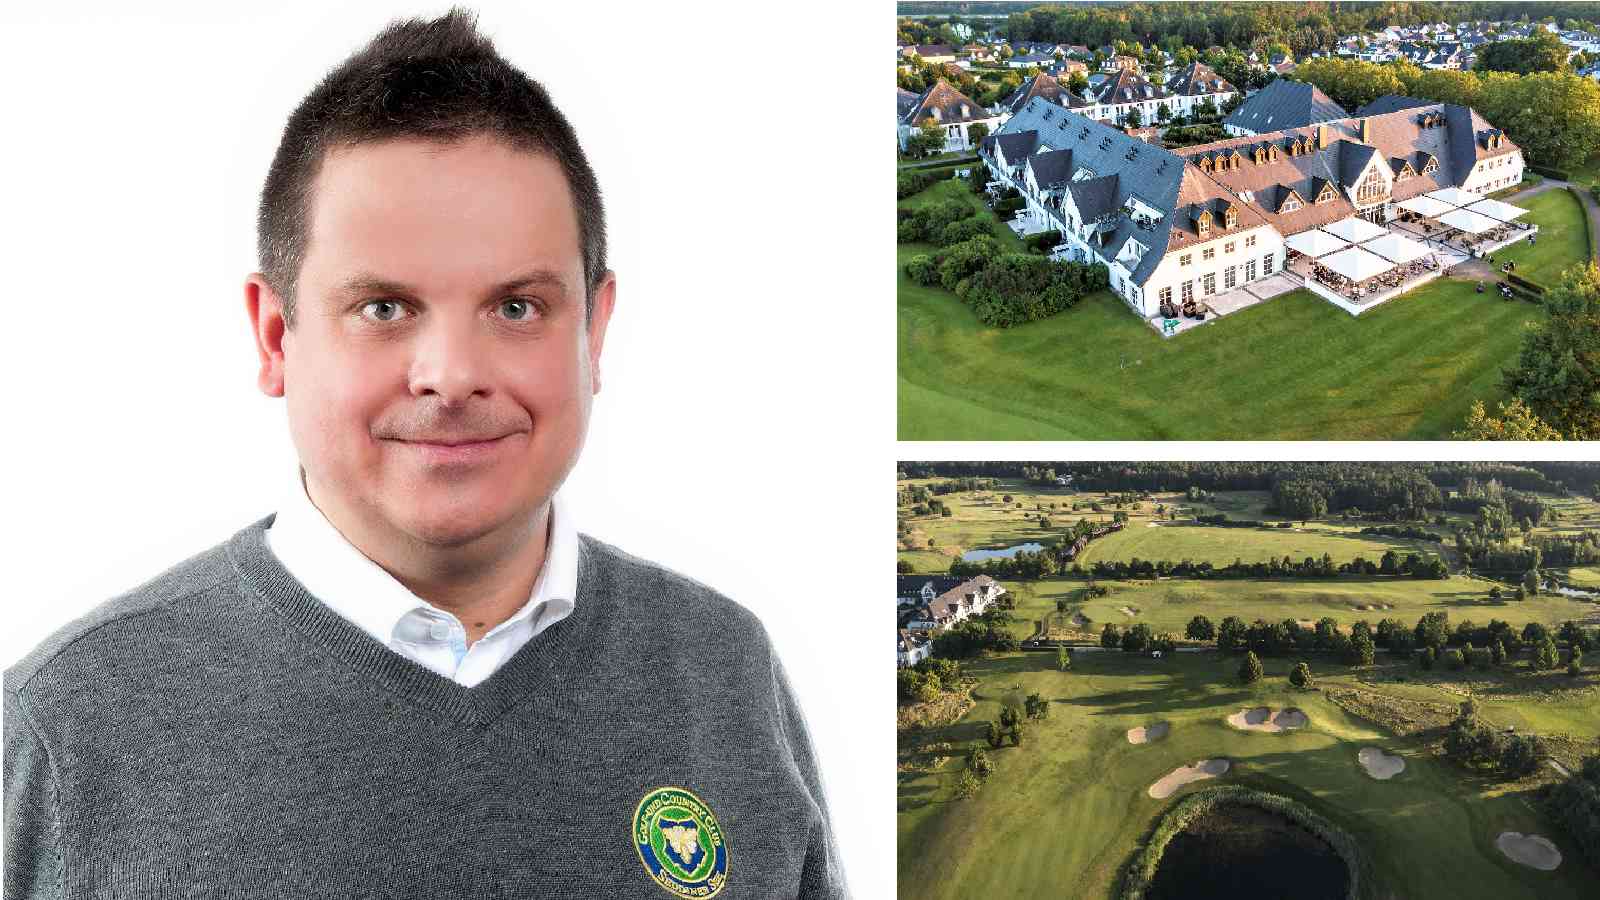 Der Gastgeber: Jochen Hornig ist Vorstand der Golf- und Country Club Seddiner See AG, wo vom 30. Juni bis 3. Juli das Amundi German Masters (LET) steigen wird.